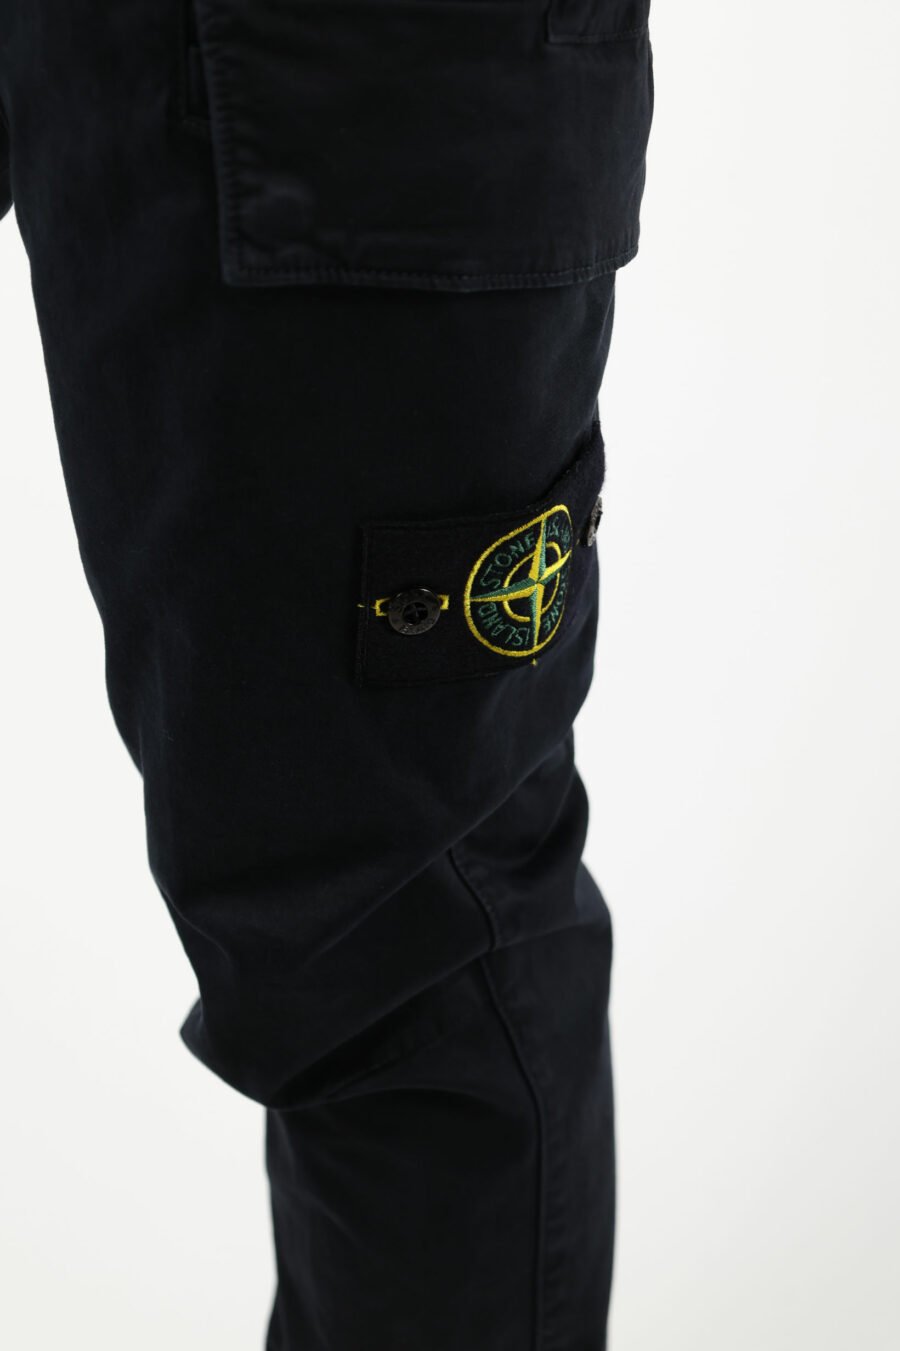 Pantalón azul oscuro "skinny" estilo cargo con logo parche brújula - 111405